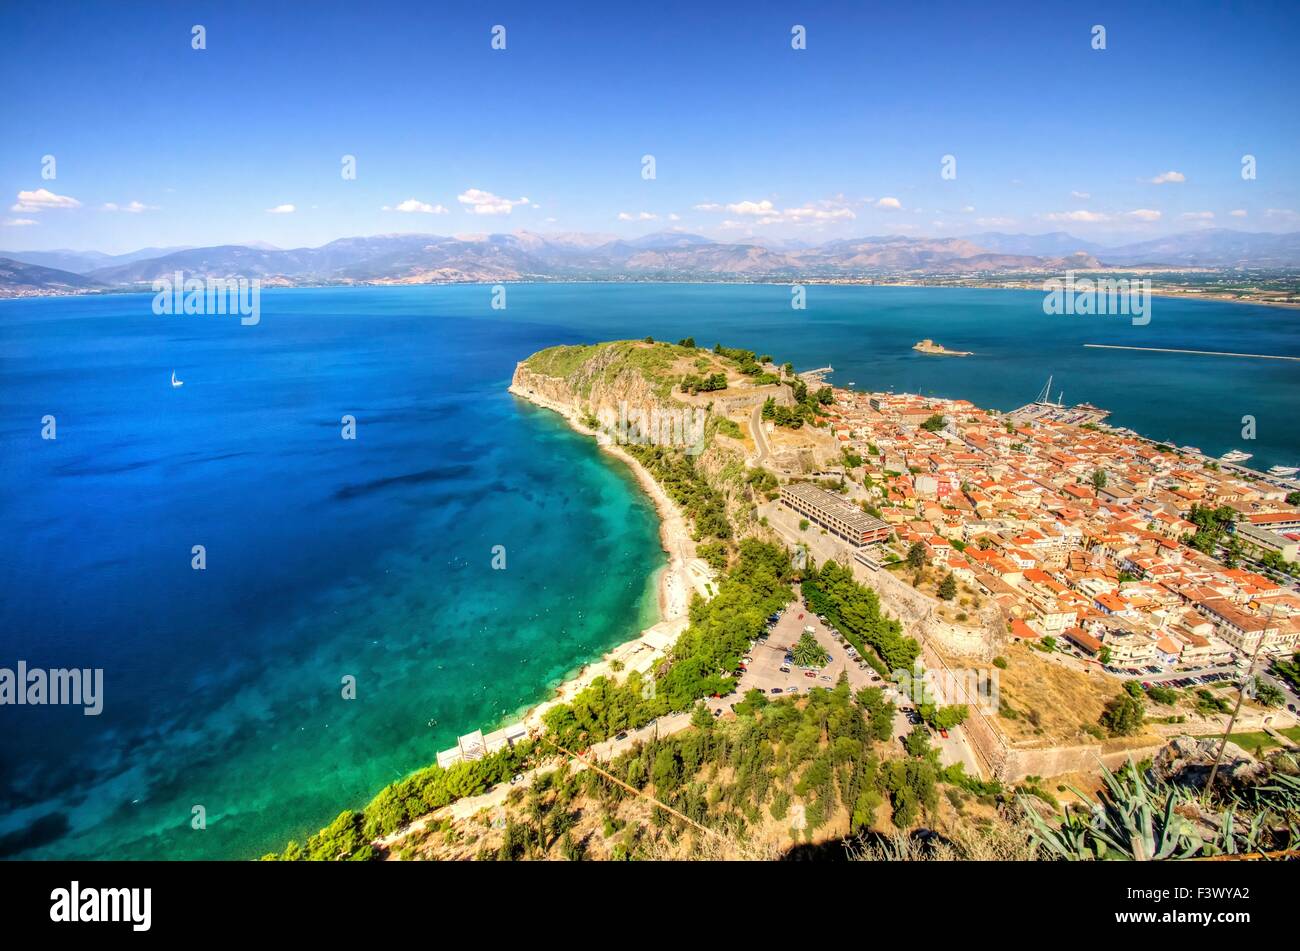 Una veduta aerea della città bellissima Nafplio, in Grecia che fu la prima capitale della Grecia. Il castello di Palamidi Bourtzi e sono così Foto Stock